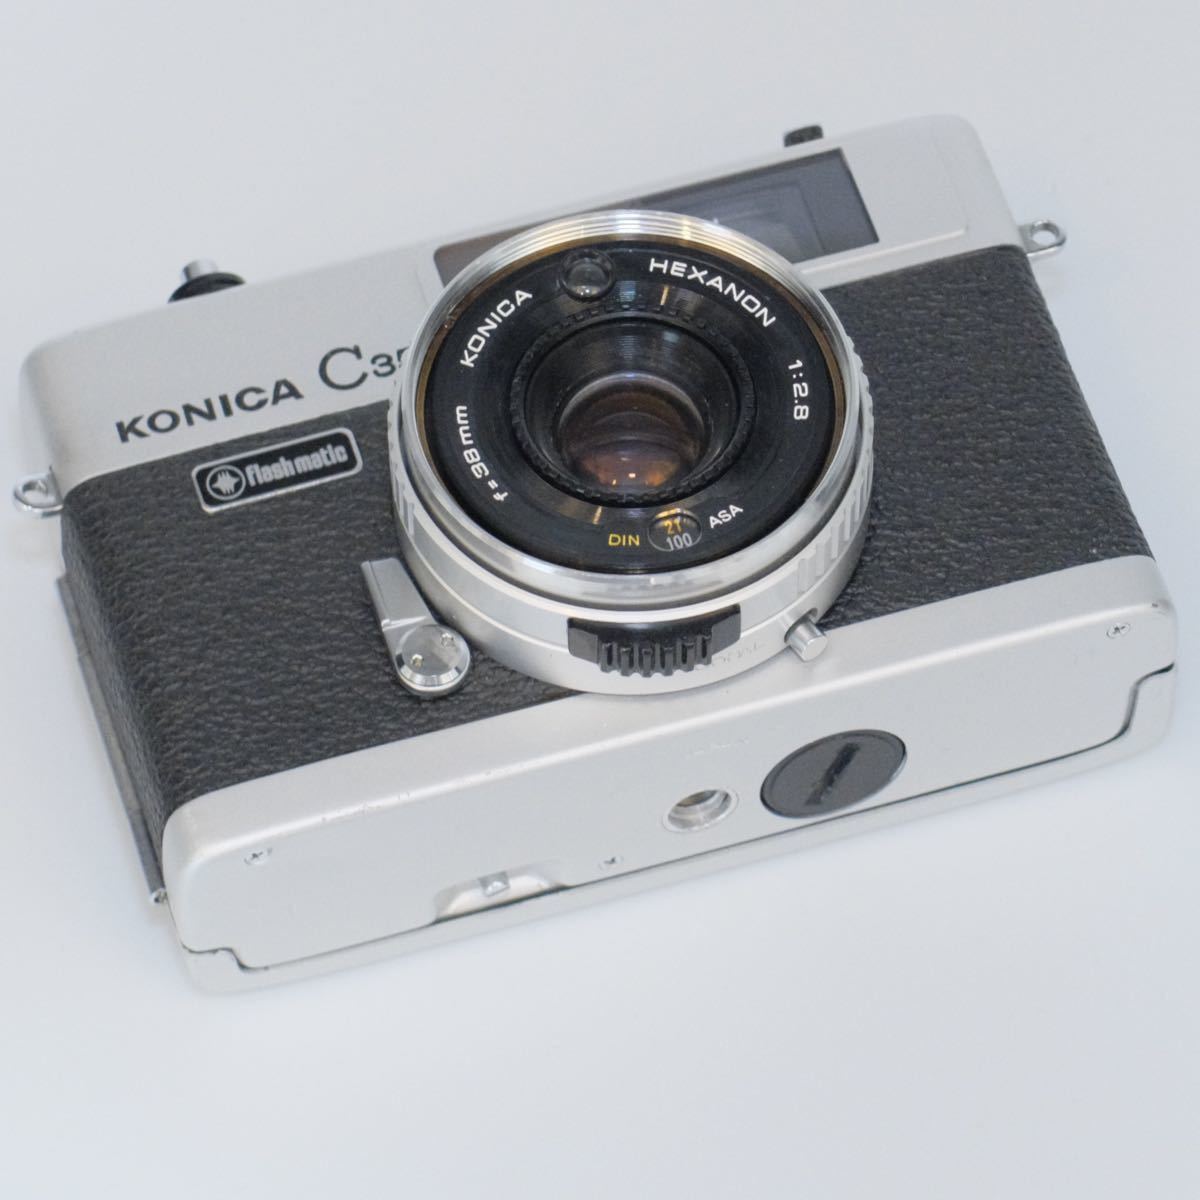 ホットスタイル 完動品・実写済☀︎konica c35 フィルムカメラ matic Flash フィルムカメラ